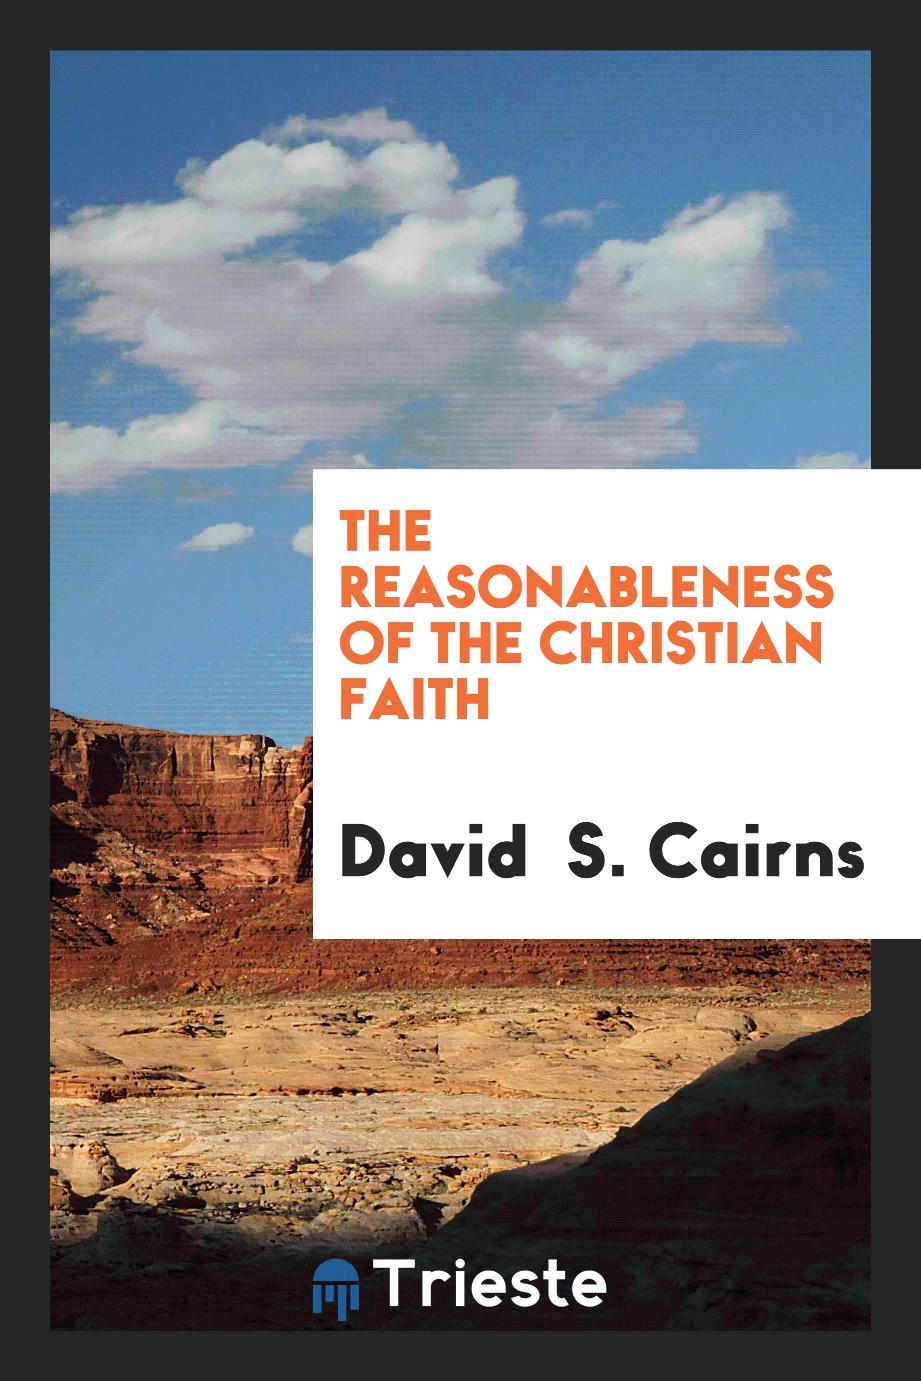 The reasonableness of the Christian faith